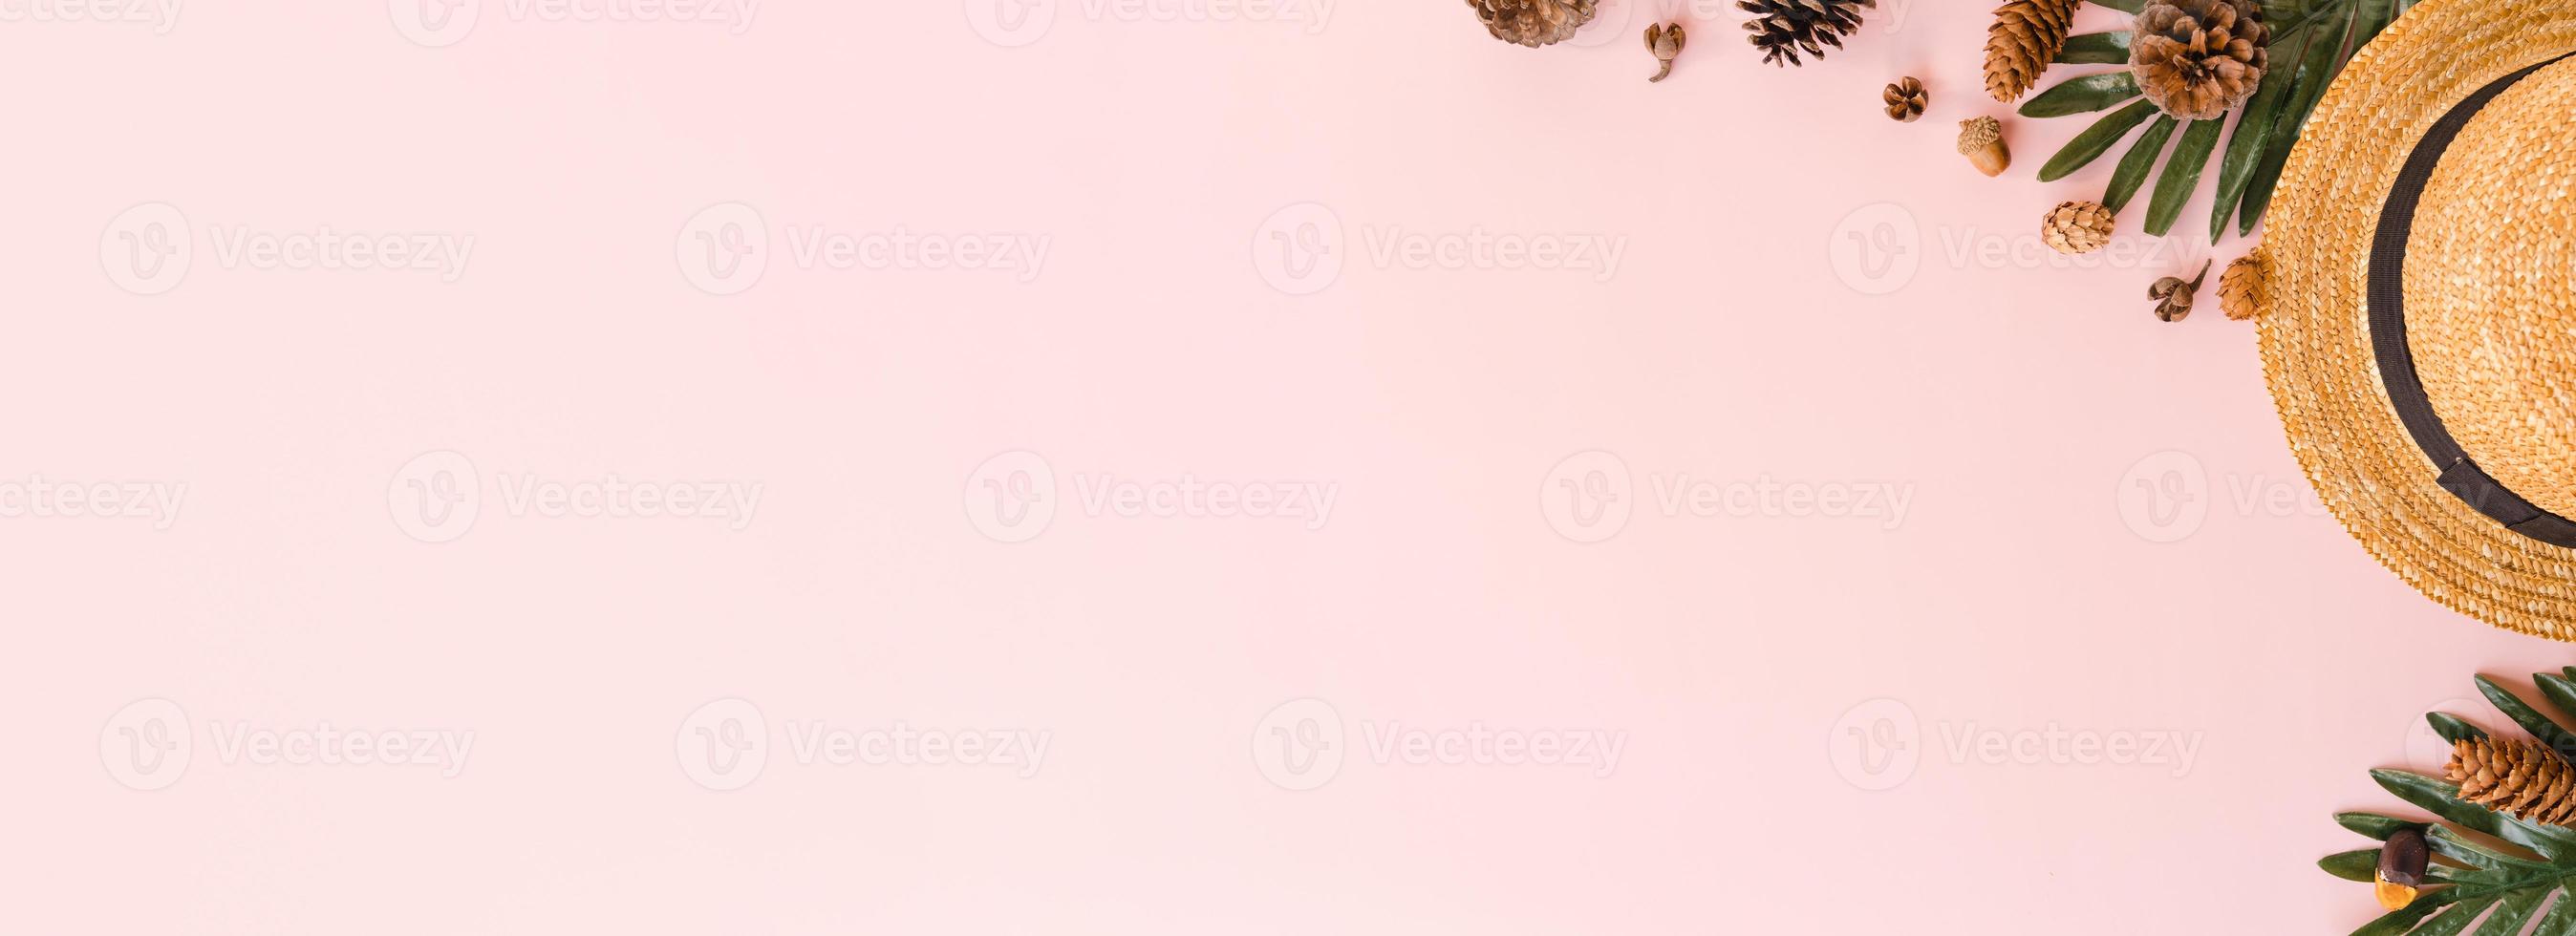 Kreative flache Lage des Reiseurlaubs Frühling oder Sommer tropische Mode. Top View Strandzubehör auf pastellrosa Farbhintergrund. Panoramabanner mit Kopienraum für Text- und Werbefläche. foto